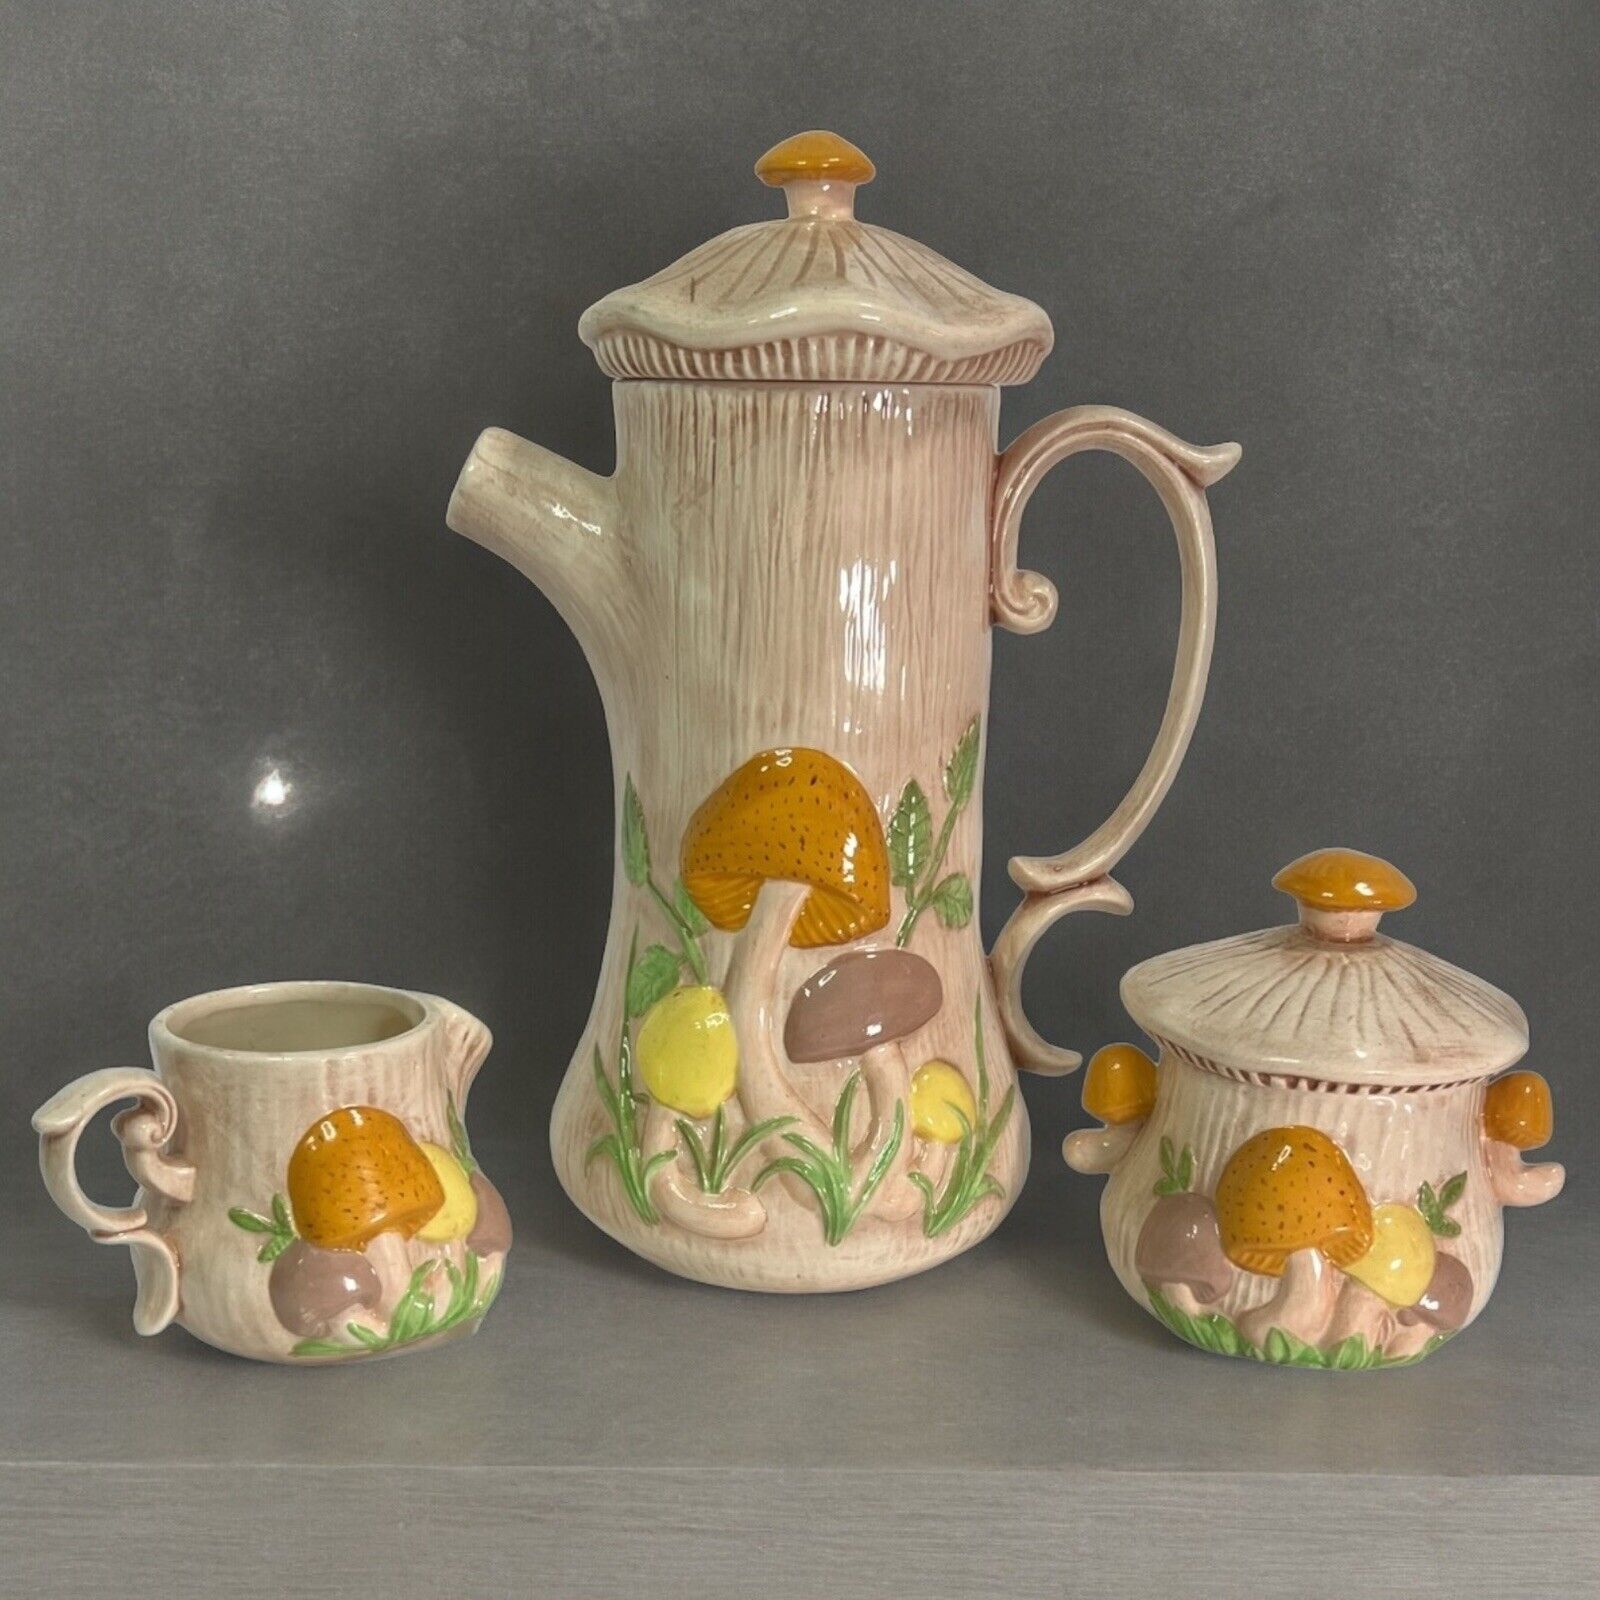 Vintage Arnel's Mushroom Pattern Coffee /Tea Pot W/ Lid, Sugar Bowl & Creamer